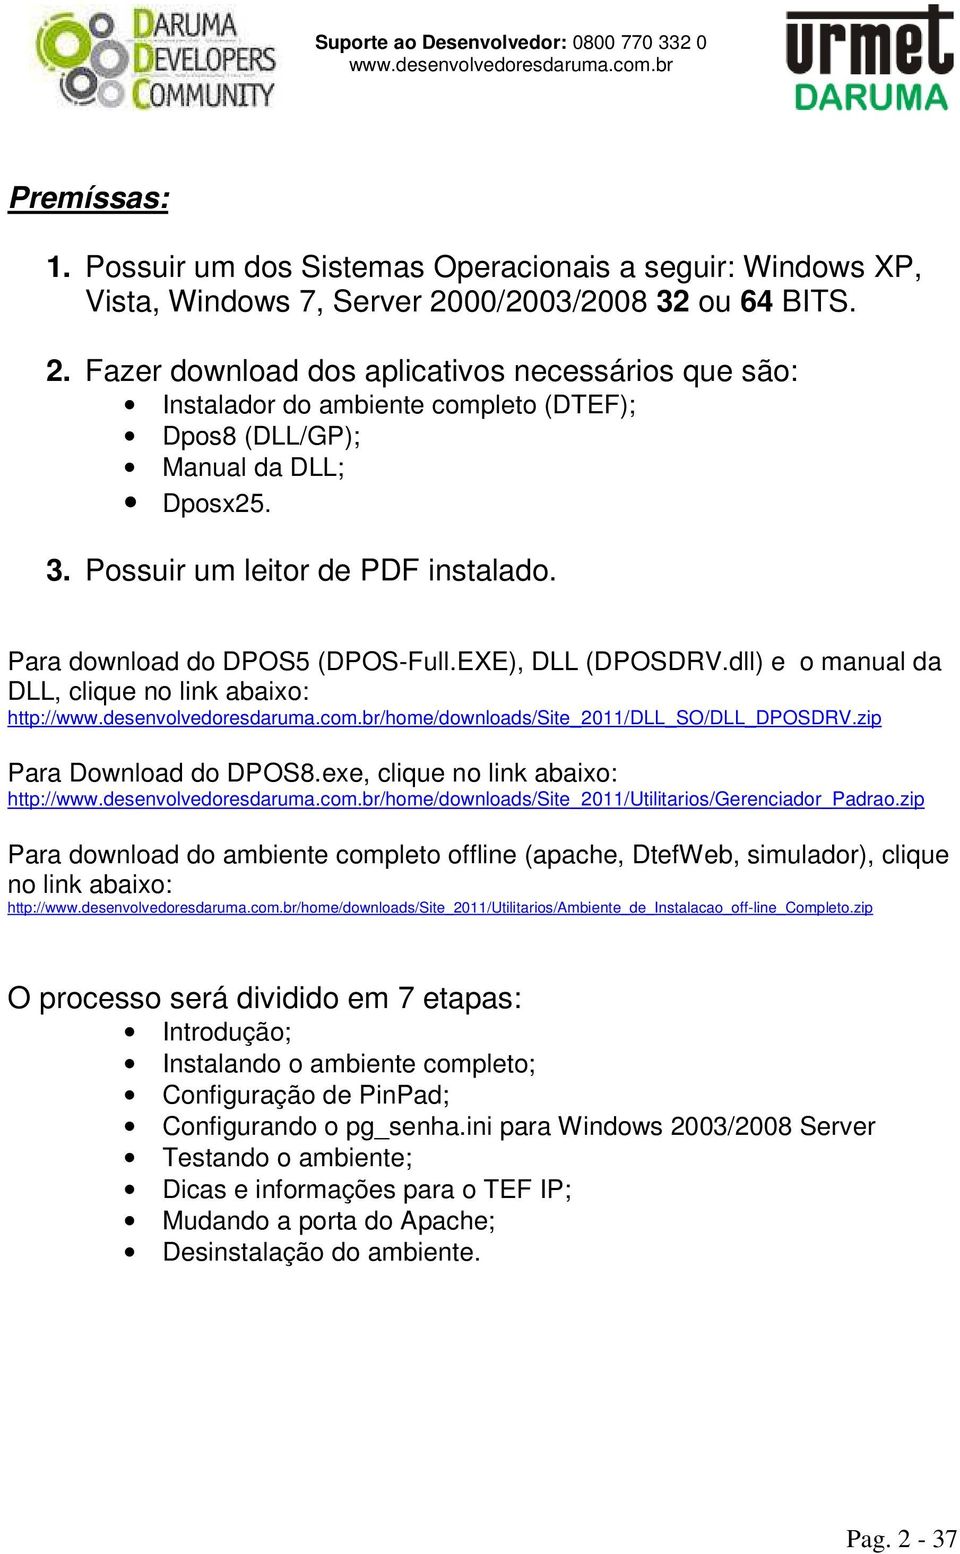 Para download do DPOS5 (DPOS-Full.EXE), DLL (DPOSDRV.dll) e o manual da DLL, clique no link abaixo: http:///home/downloads/site_2011/dll_so/dll_dposdrv.zip Para Download do DPOS8.